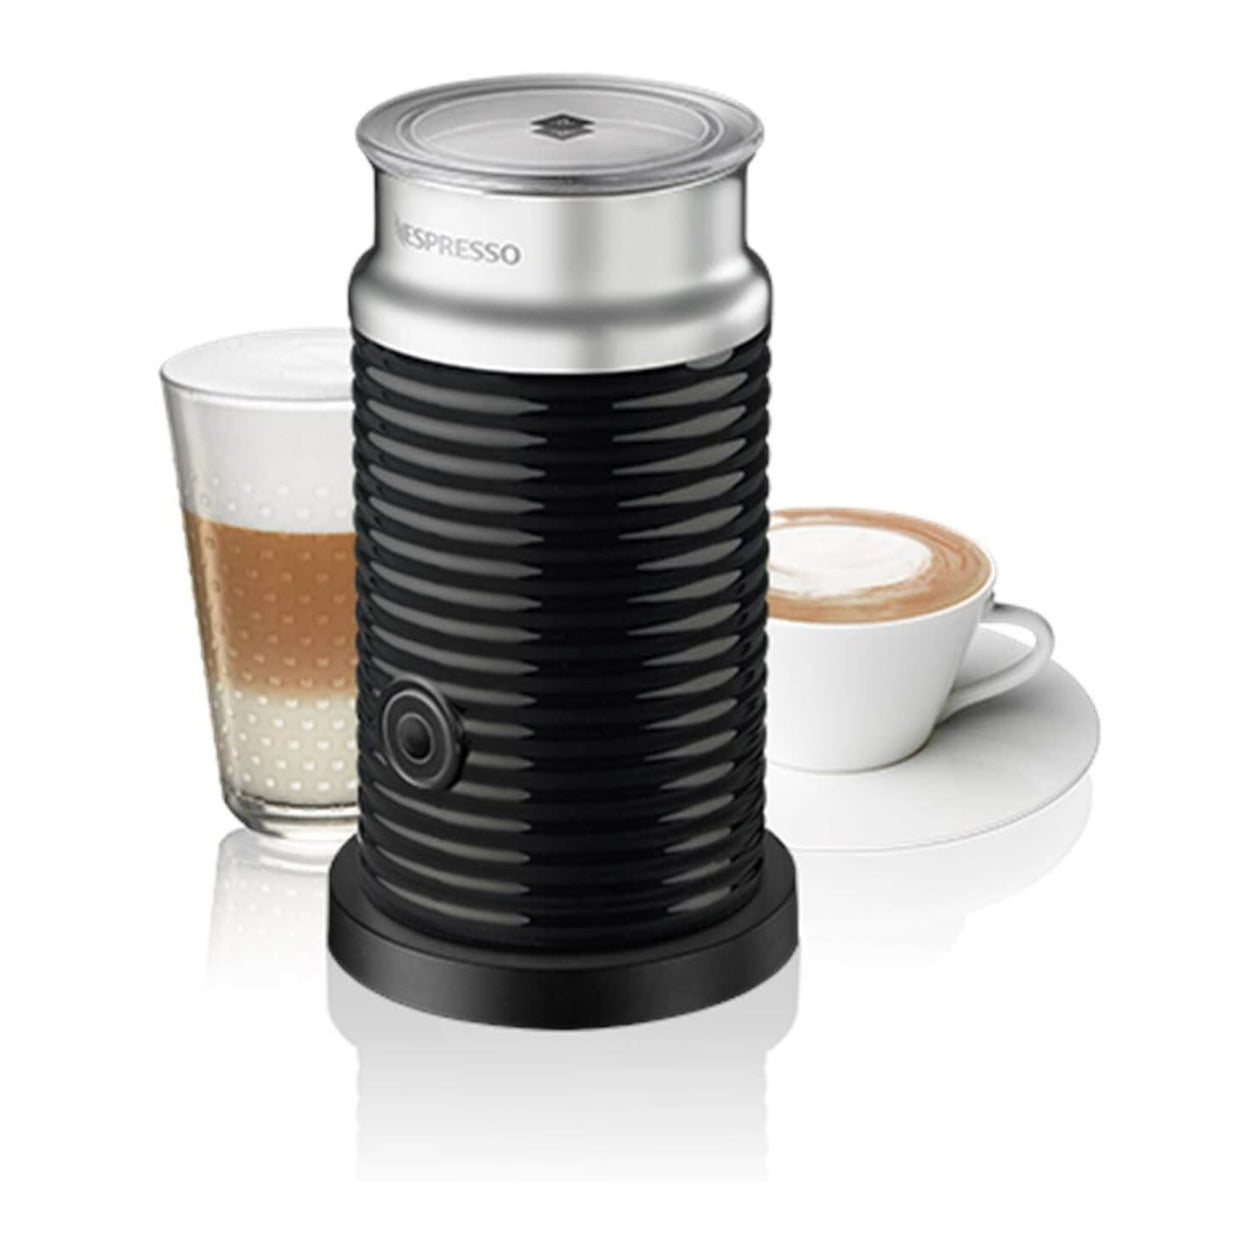 Nespresso Vertuo Next Coffee and Espresso Machine - Deluxe Classic Black  44387312028